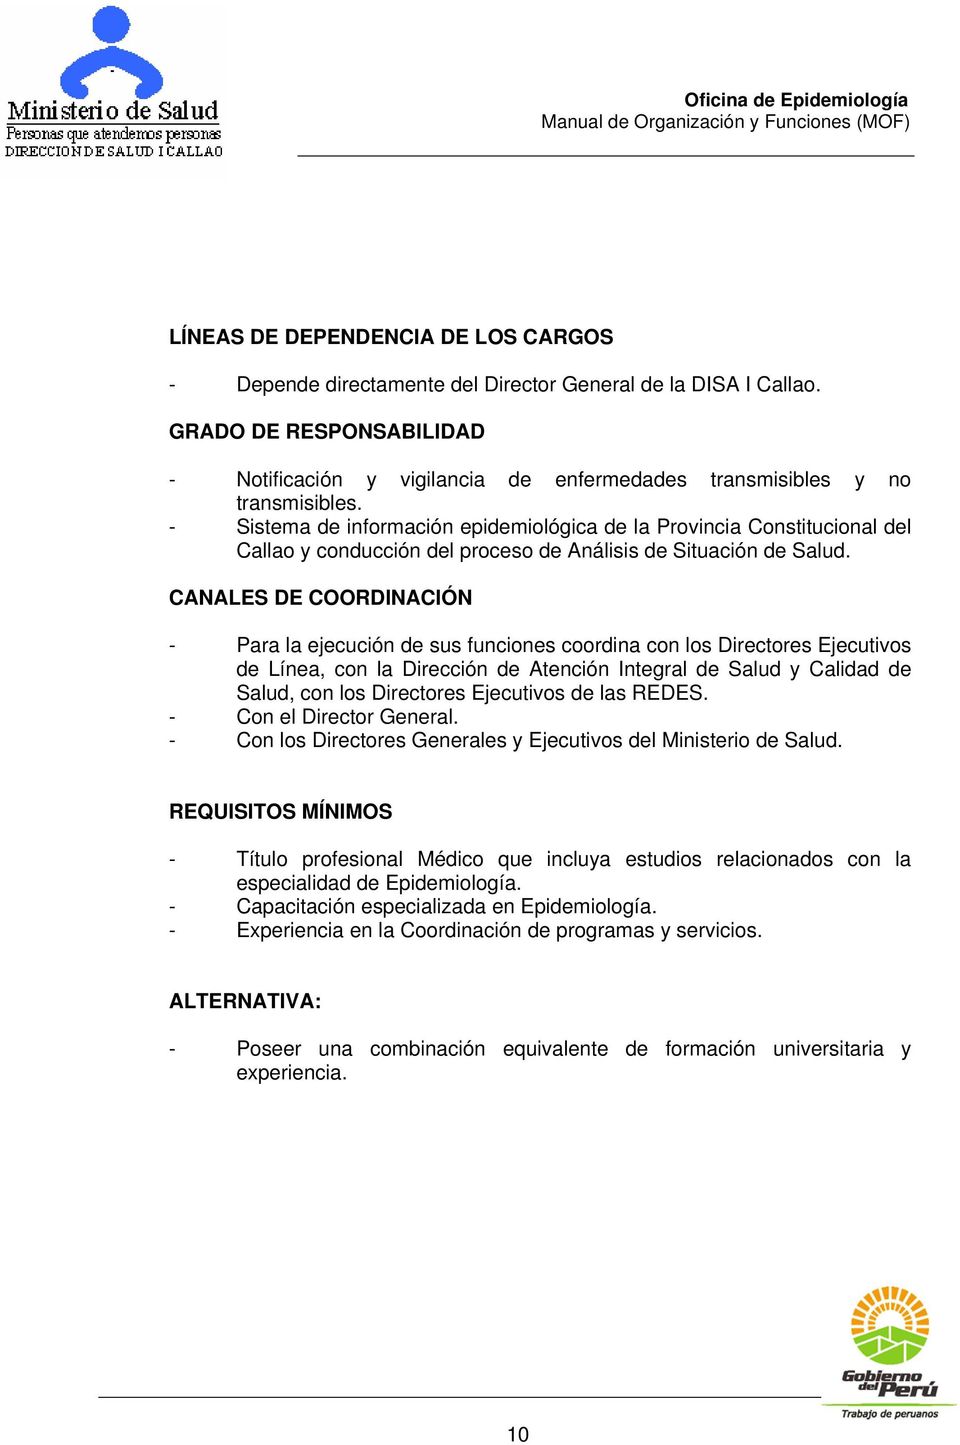 - Sistema de información epidemiológica de la Provincia Constitucional del Callao y conducción del proceso de Análisis de Situación de Salud.